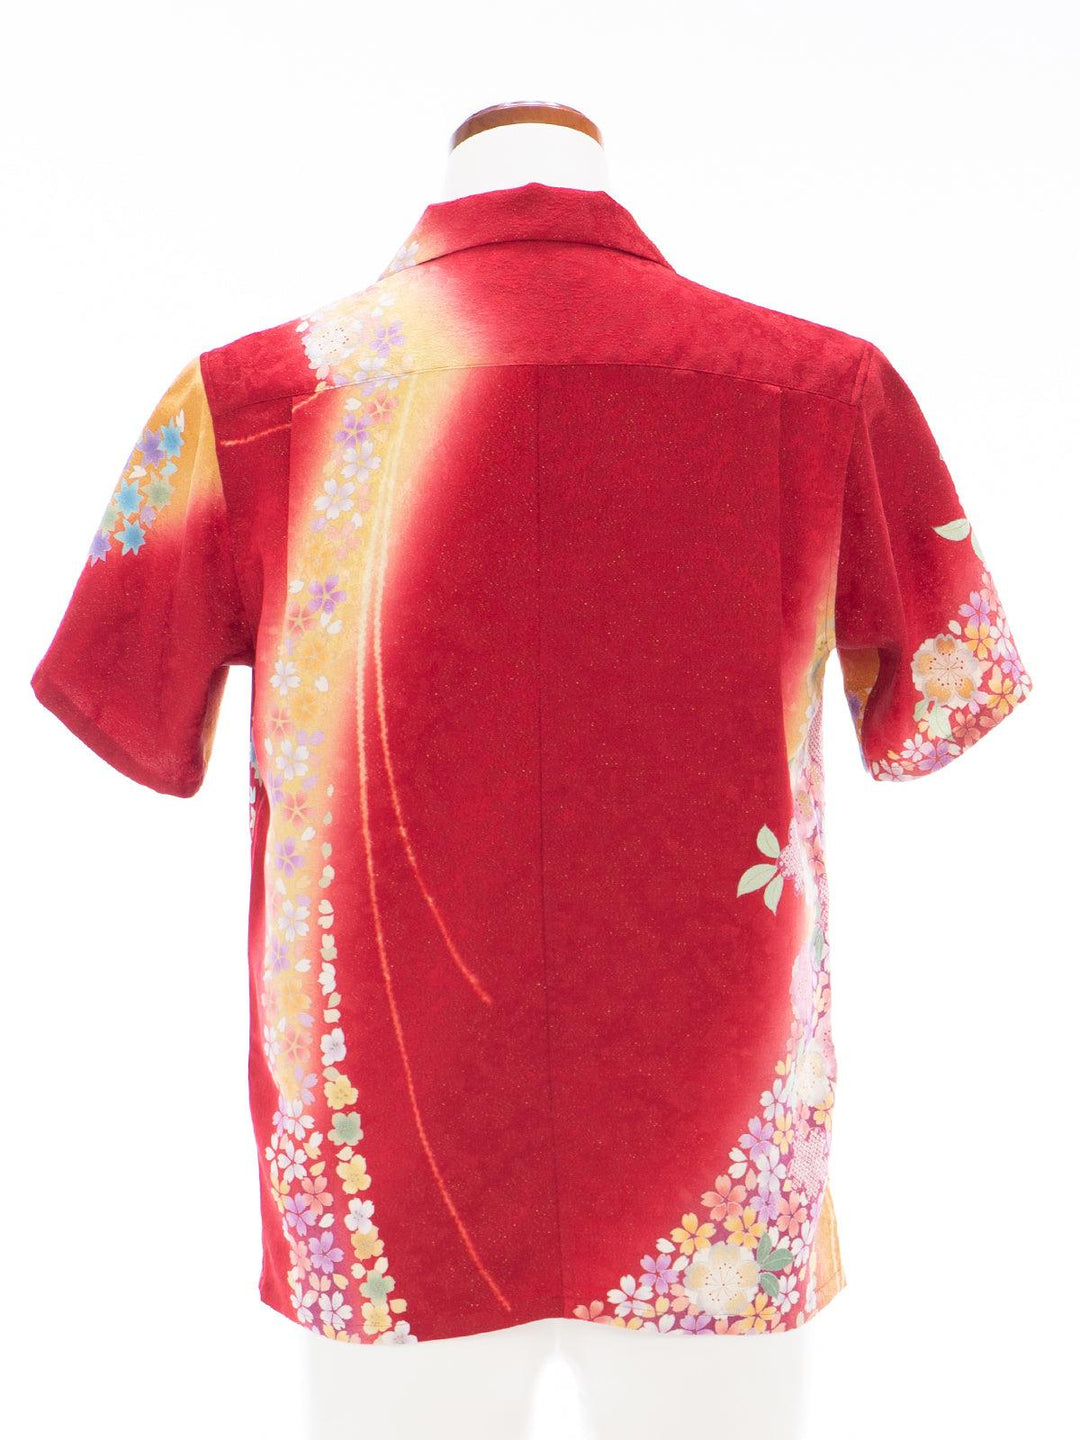 着物アロハシャツ「赤に流れ咲く花 A」AH100159 - 着物アロハシャツ専門店｜KIMONO-CYCLE